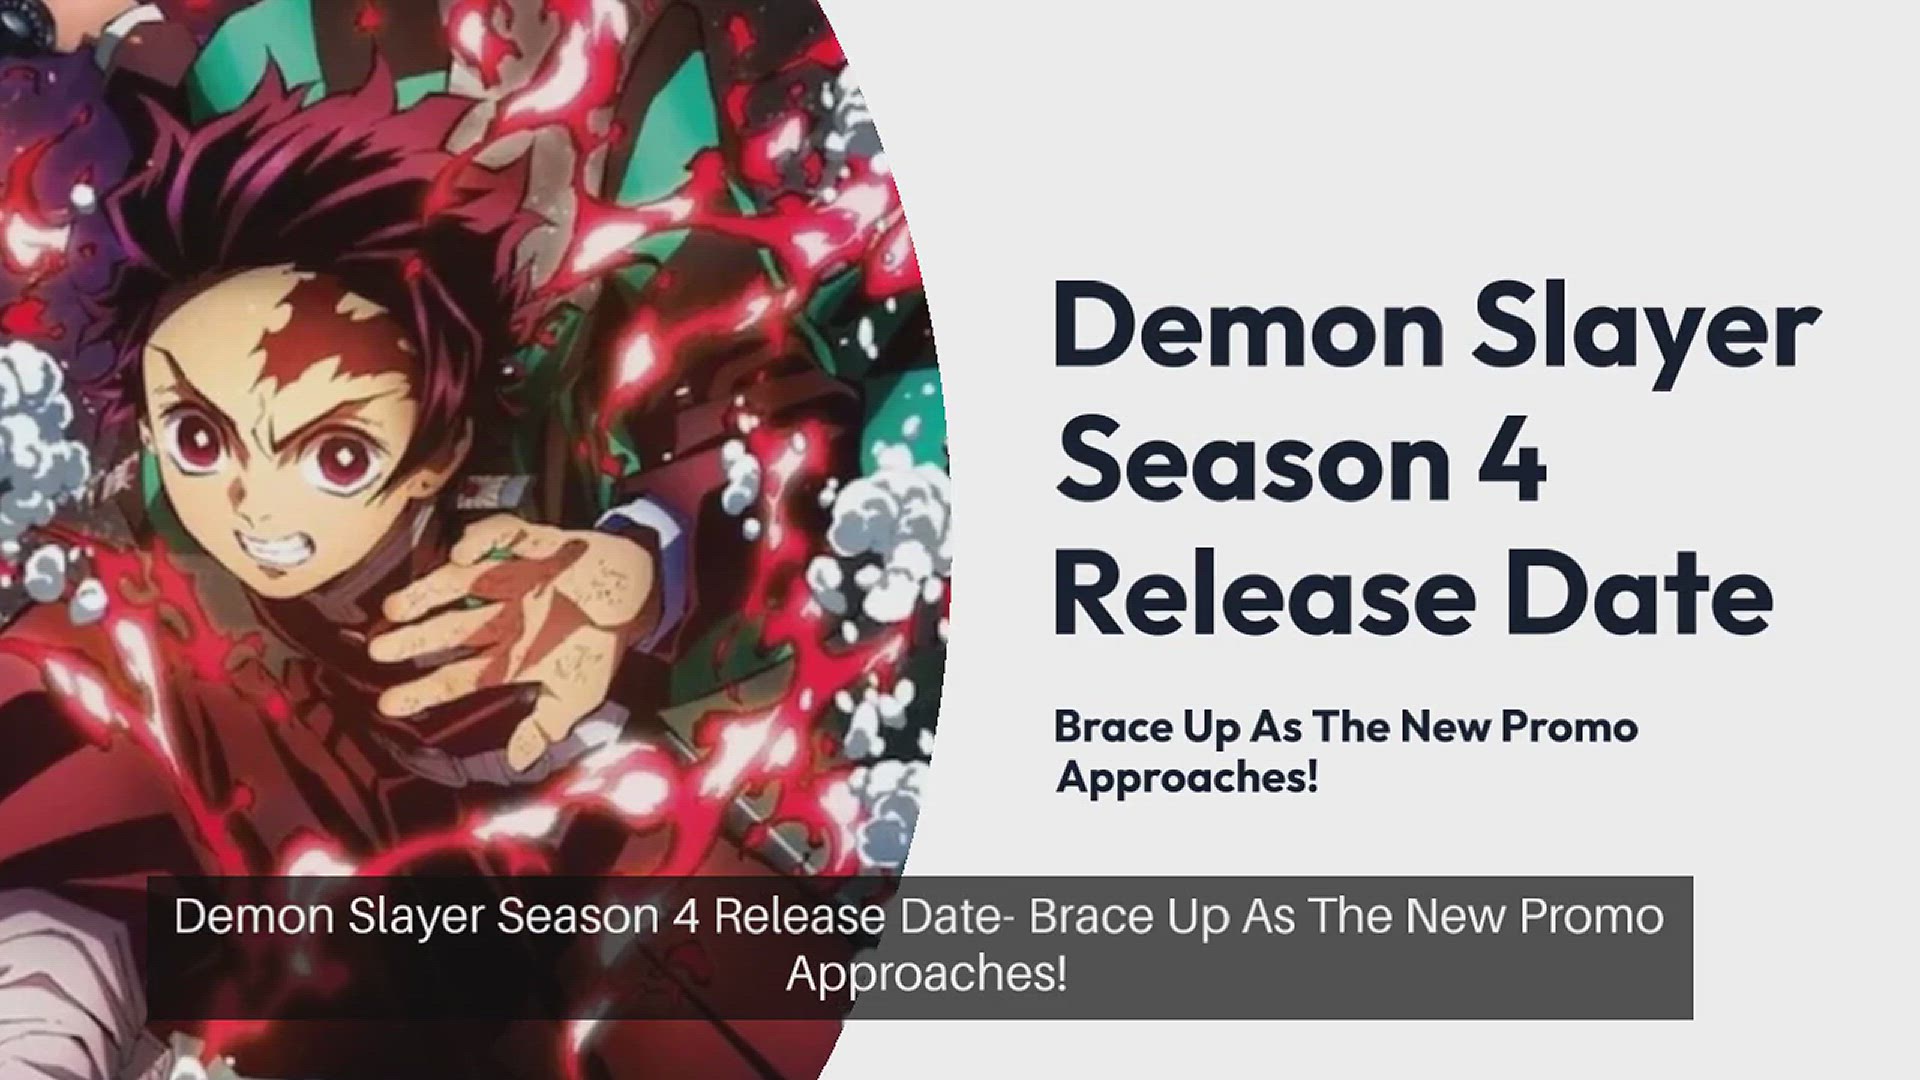 GOBLIN SLAYER Anime Reveals New Season 2 Character in 2nd Trailer -  Crunchyroll News